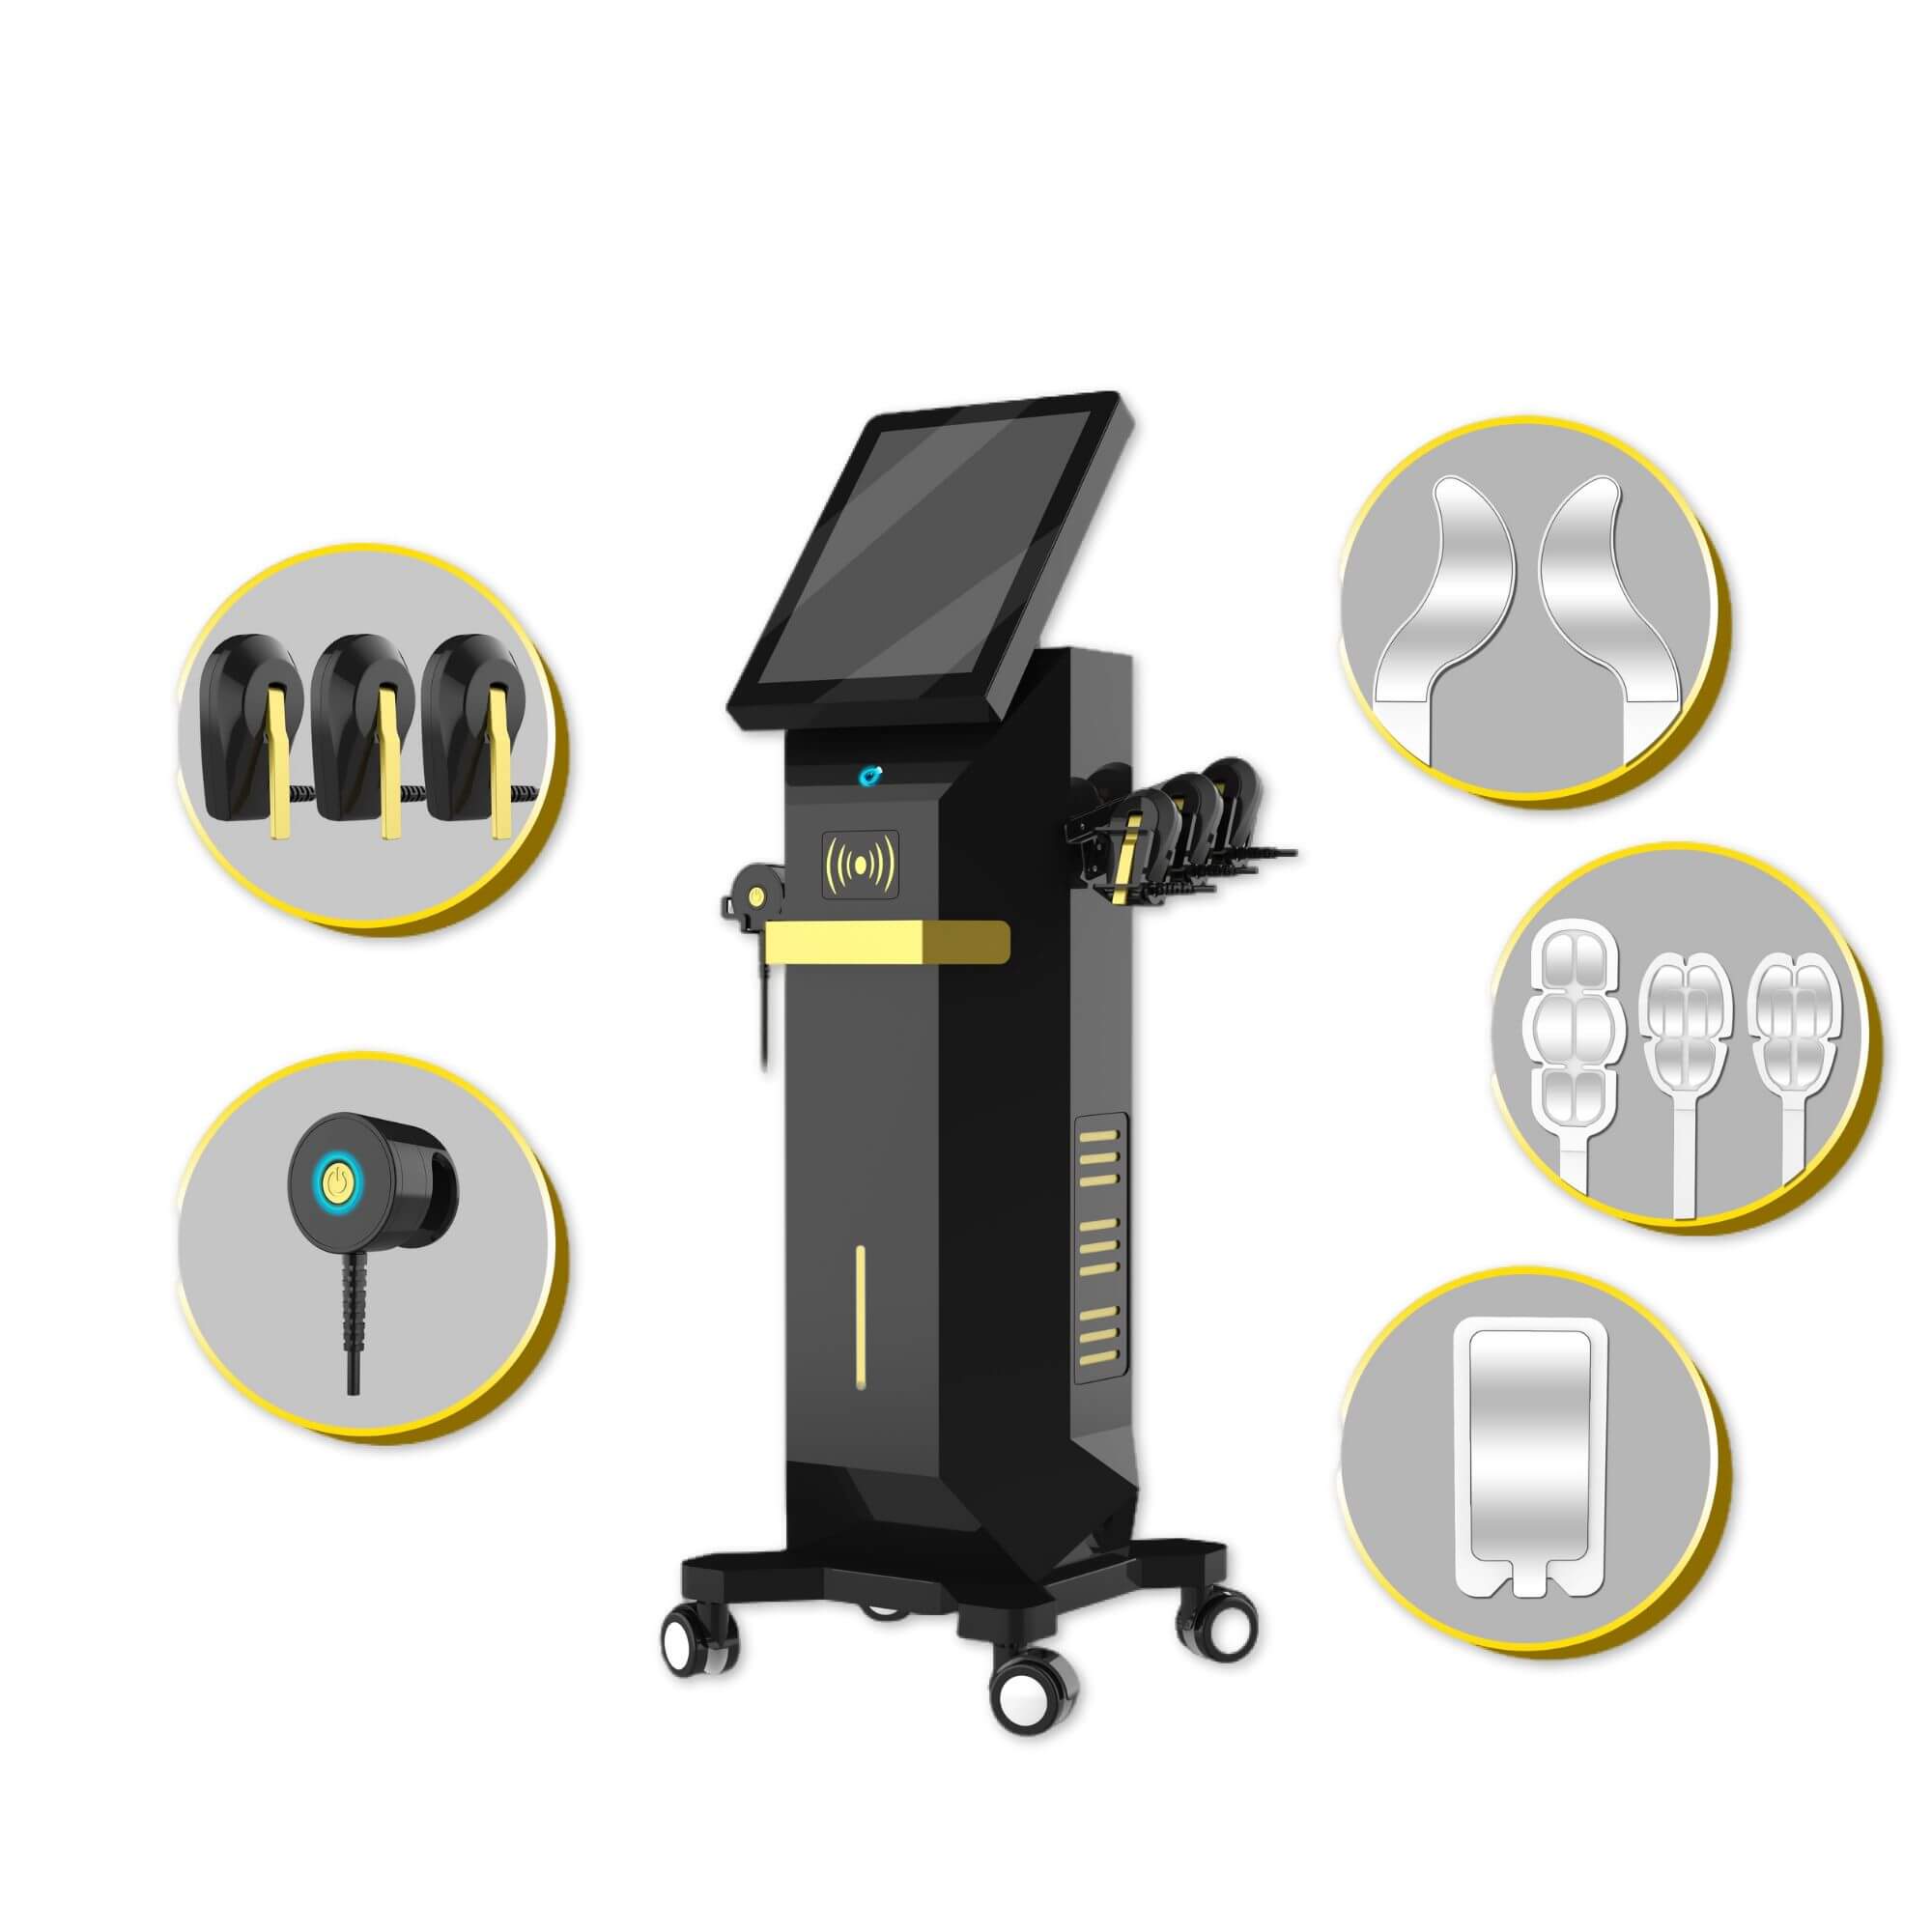 Аппарат для лица EM с сенсорным экраном 15 дюймов — профессиональное коммерческое использование